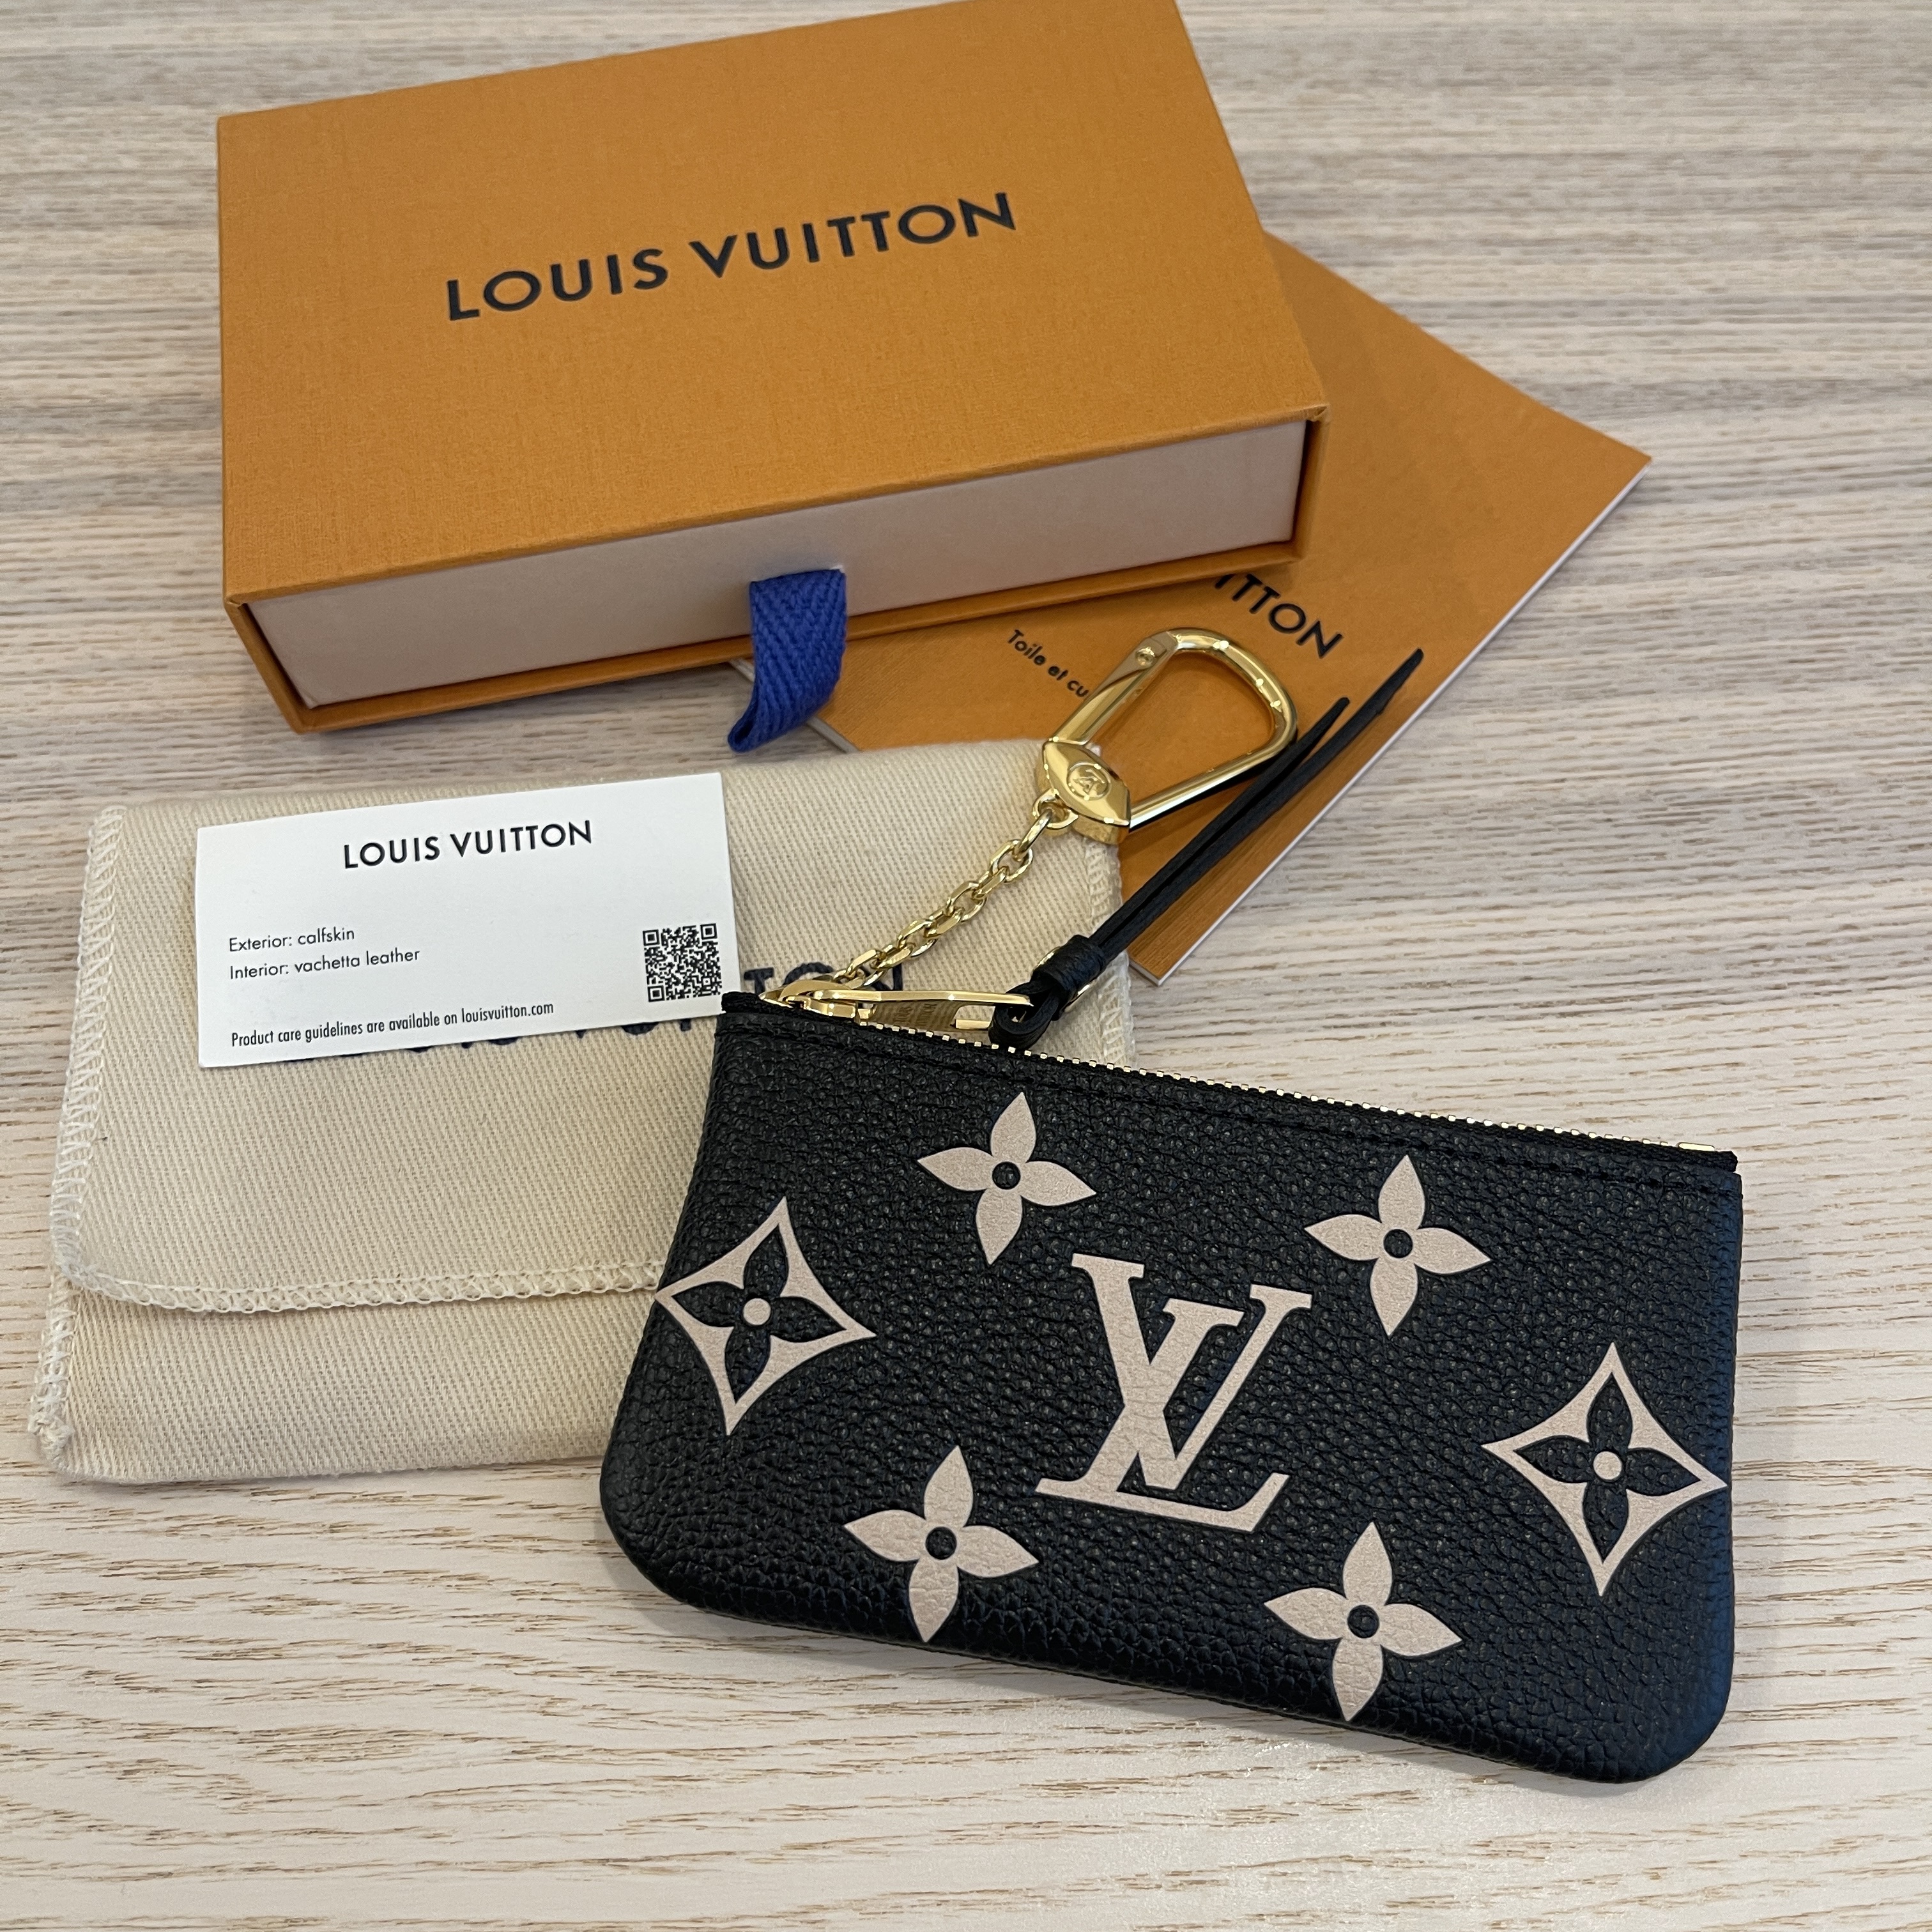 Louis Vuitton Monogram Key Pouch w/ Tags